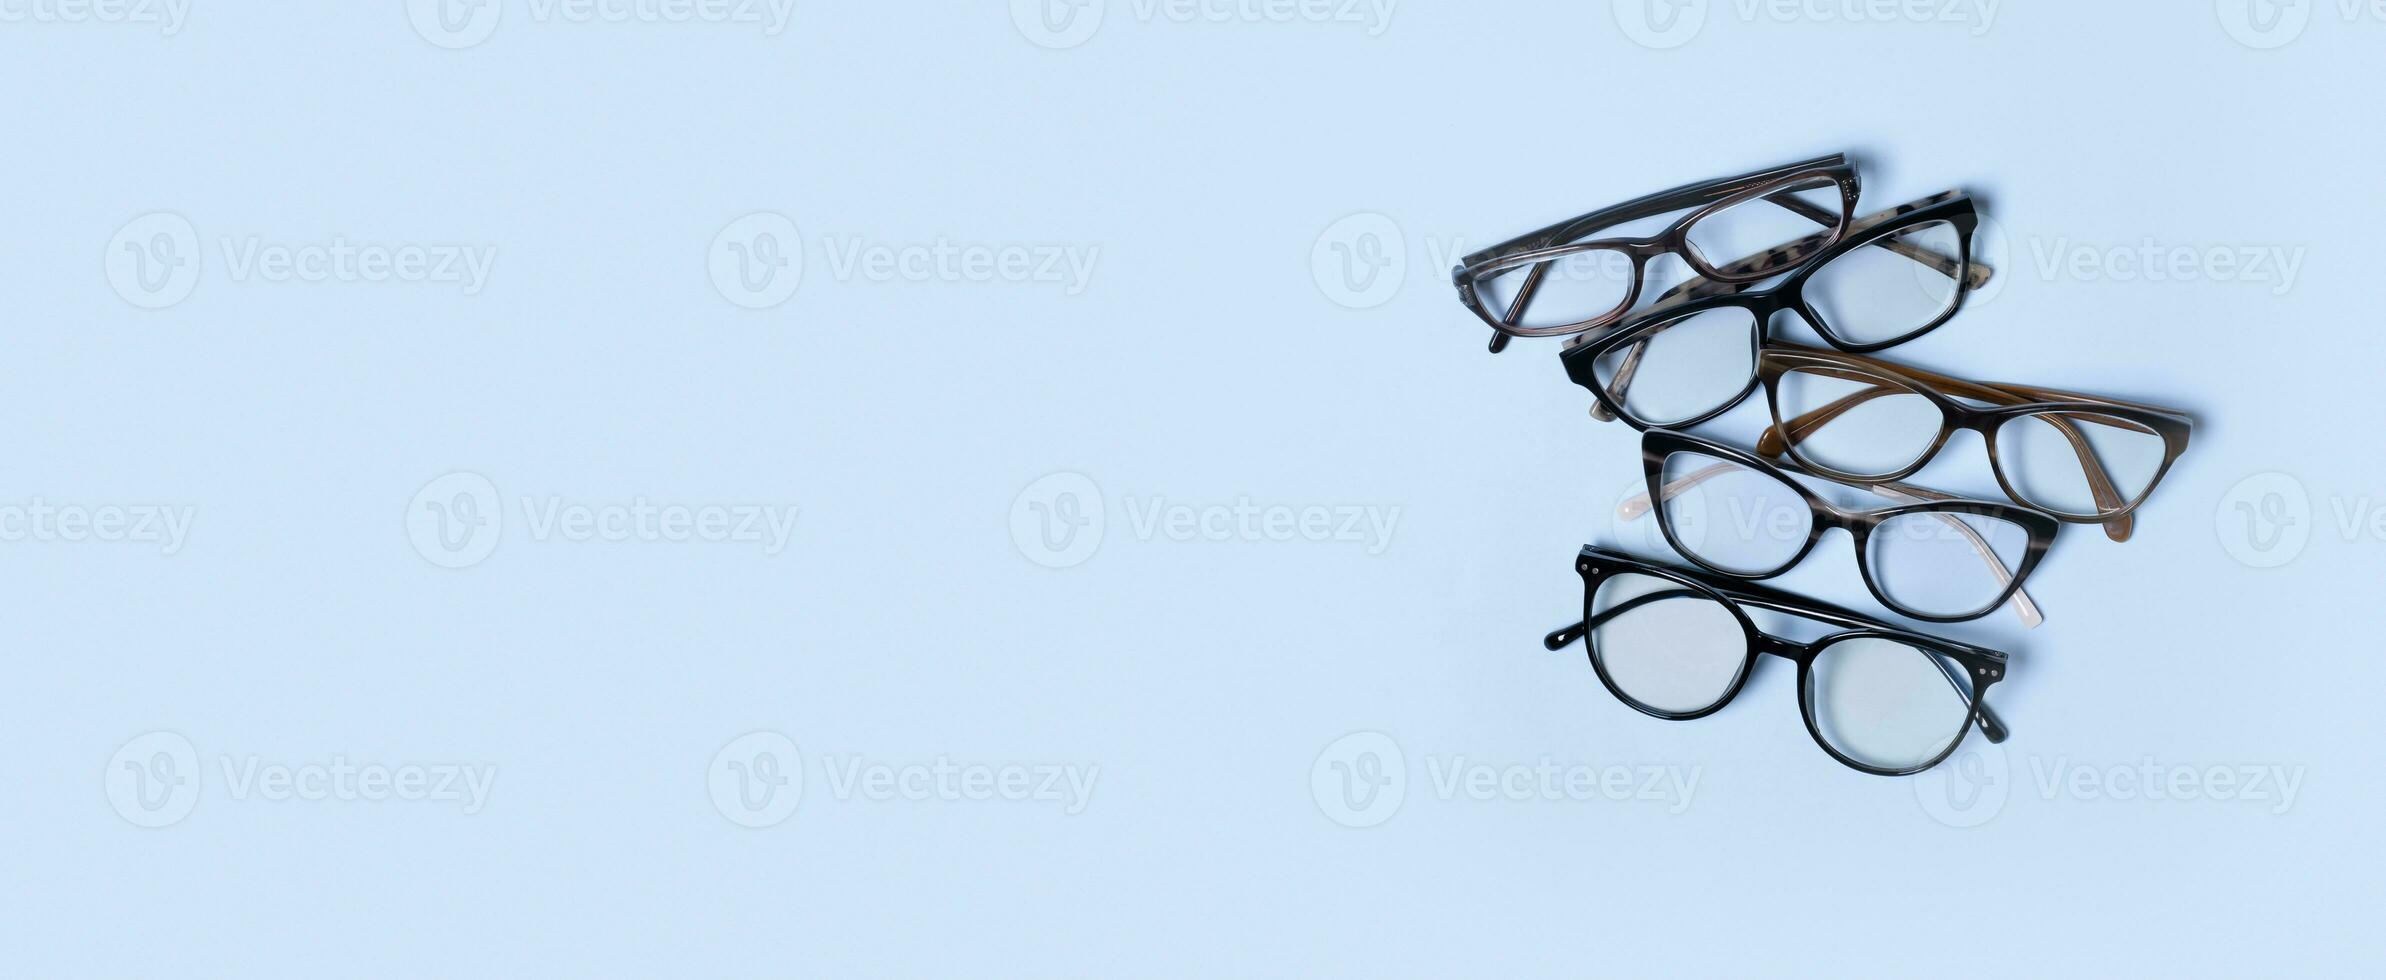 Brille auf Blau Hintergrund mit Kopieren Raum. optisch speichern, Vision prüfen, stilvoll Brille Konzept foto